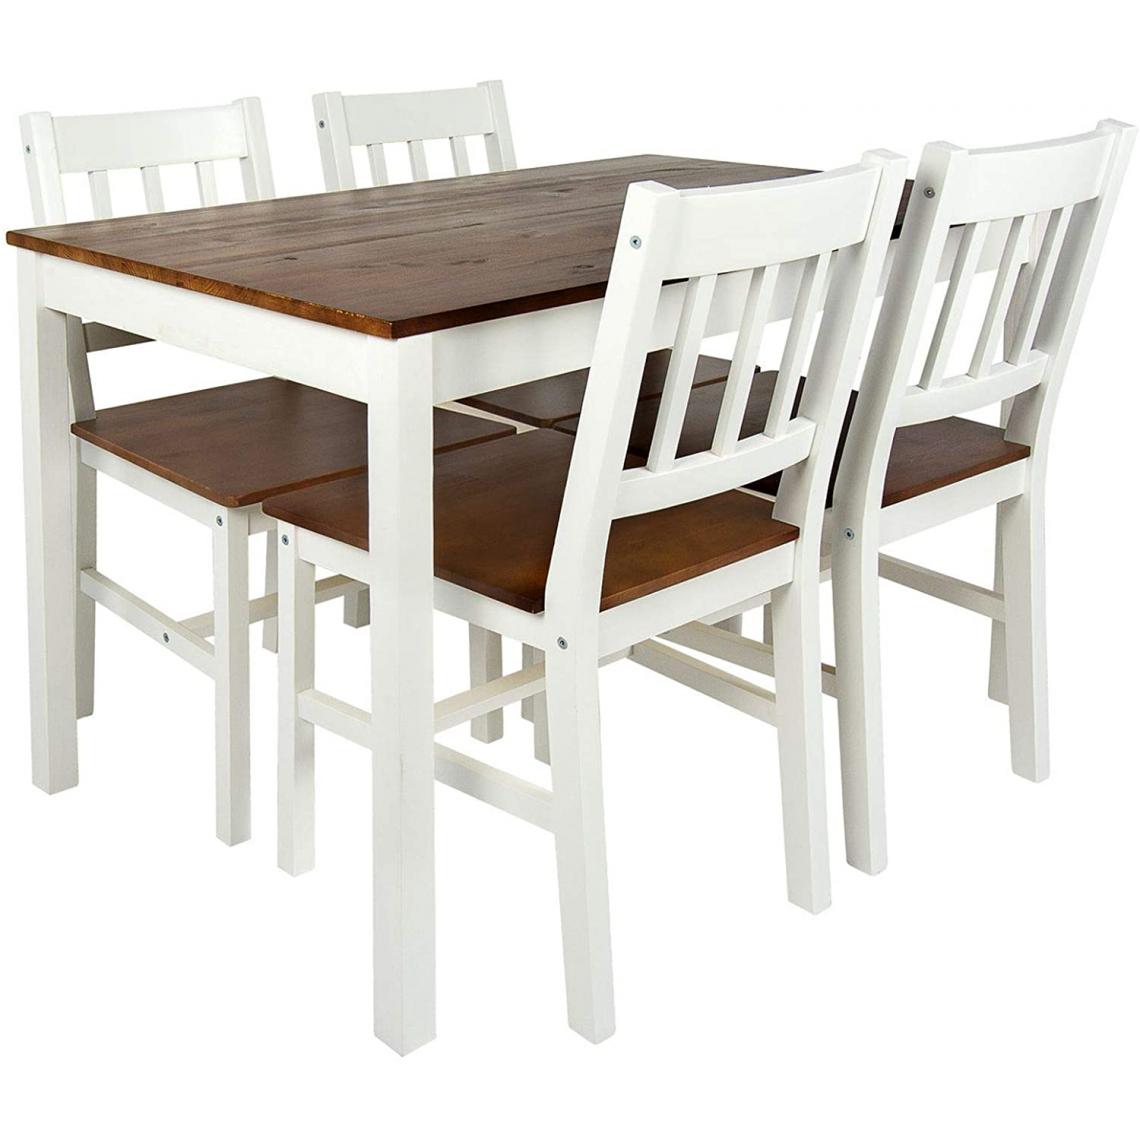 Leomark - Table en pin avec 4 chaises en bois - Blanc-Noyer - Tables à manger